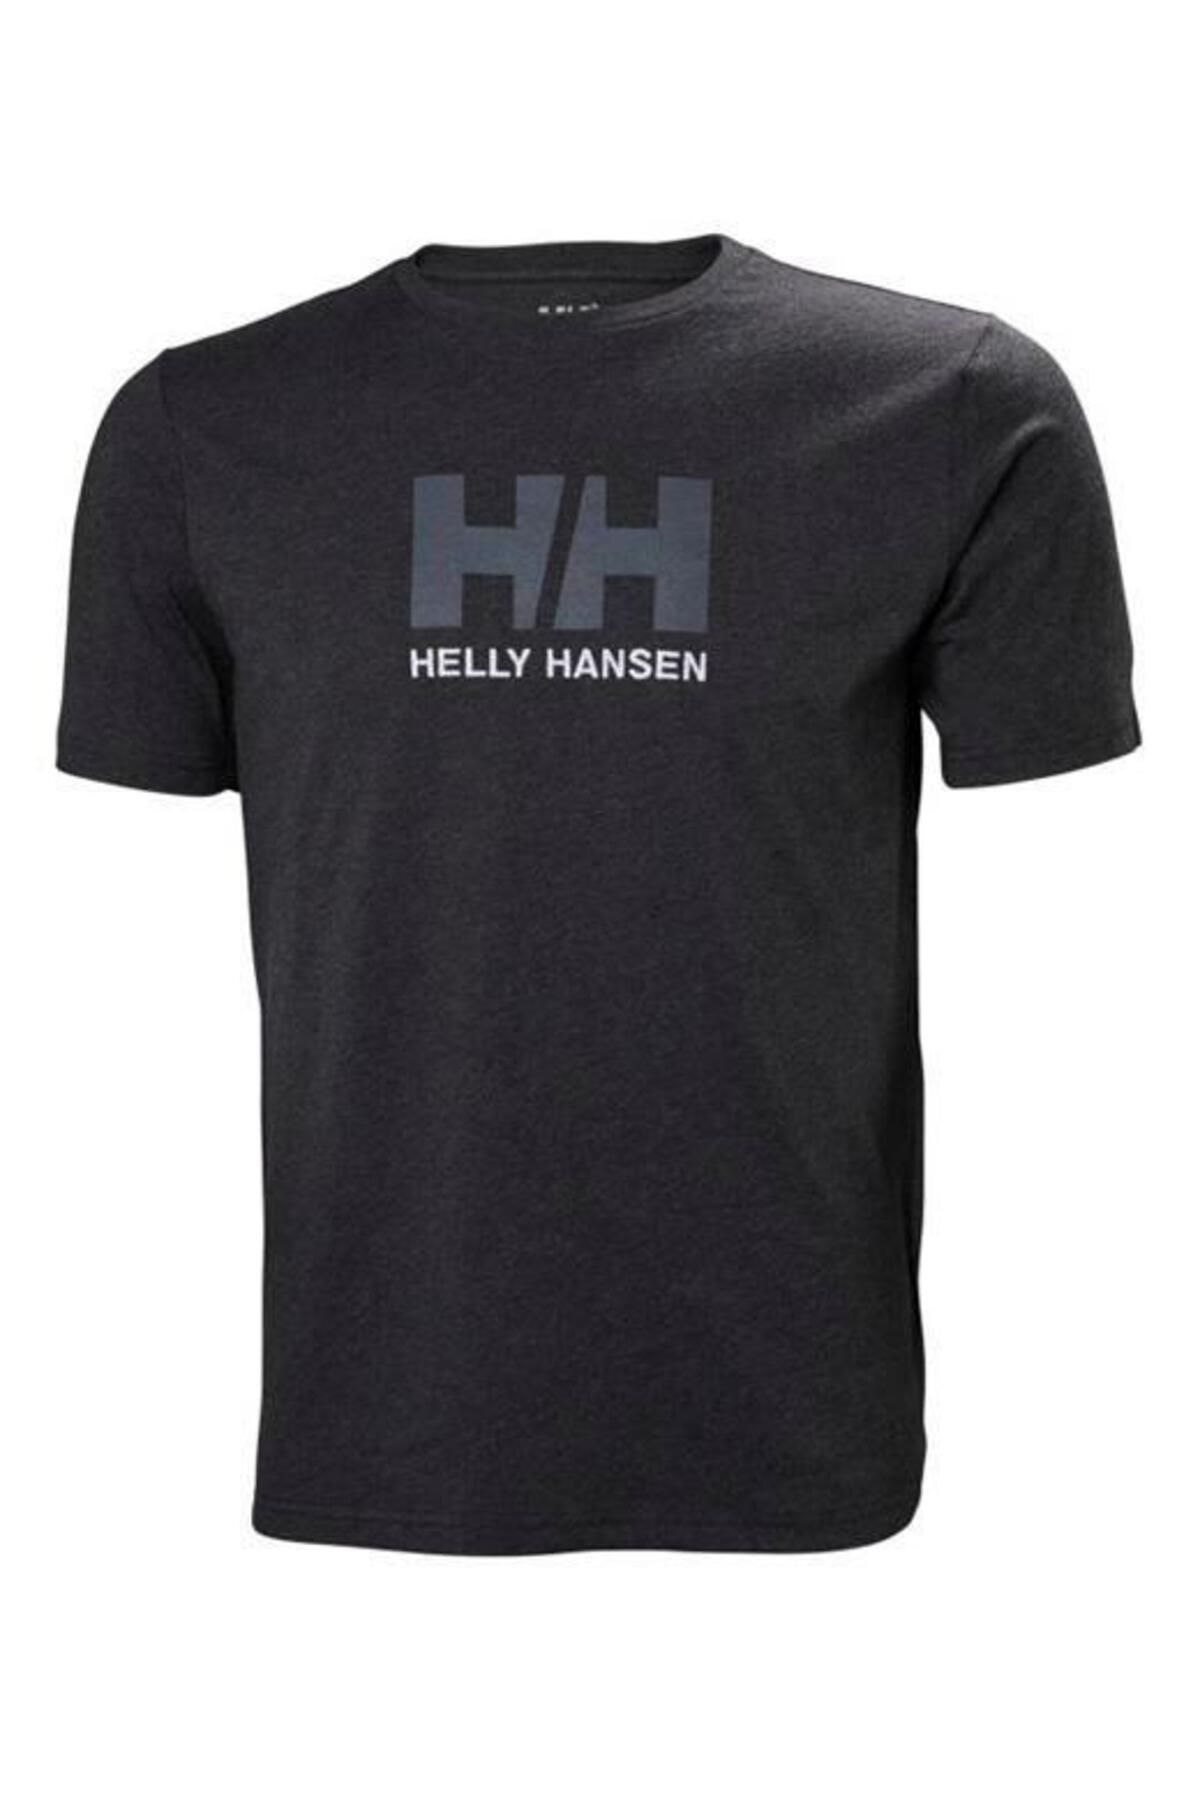 Helly Hansen Hh Hh Logo T-shirt